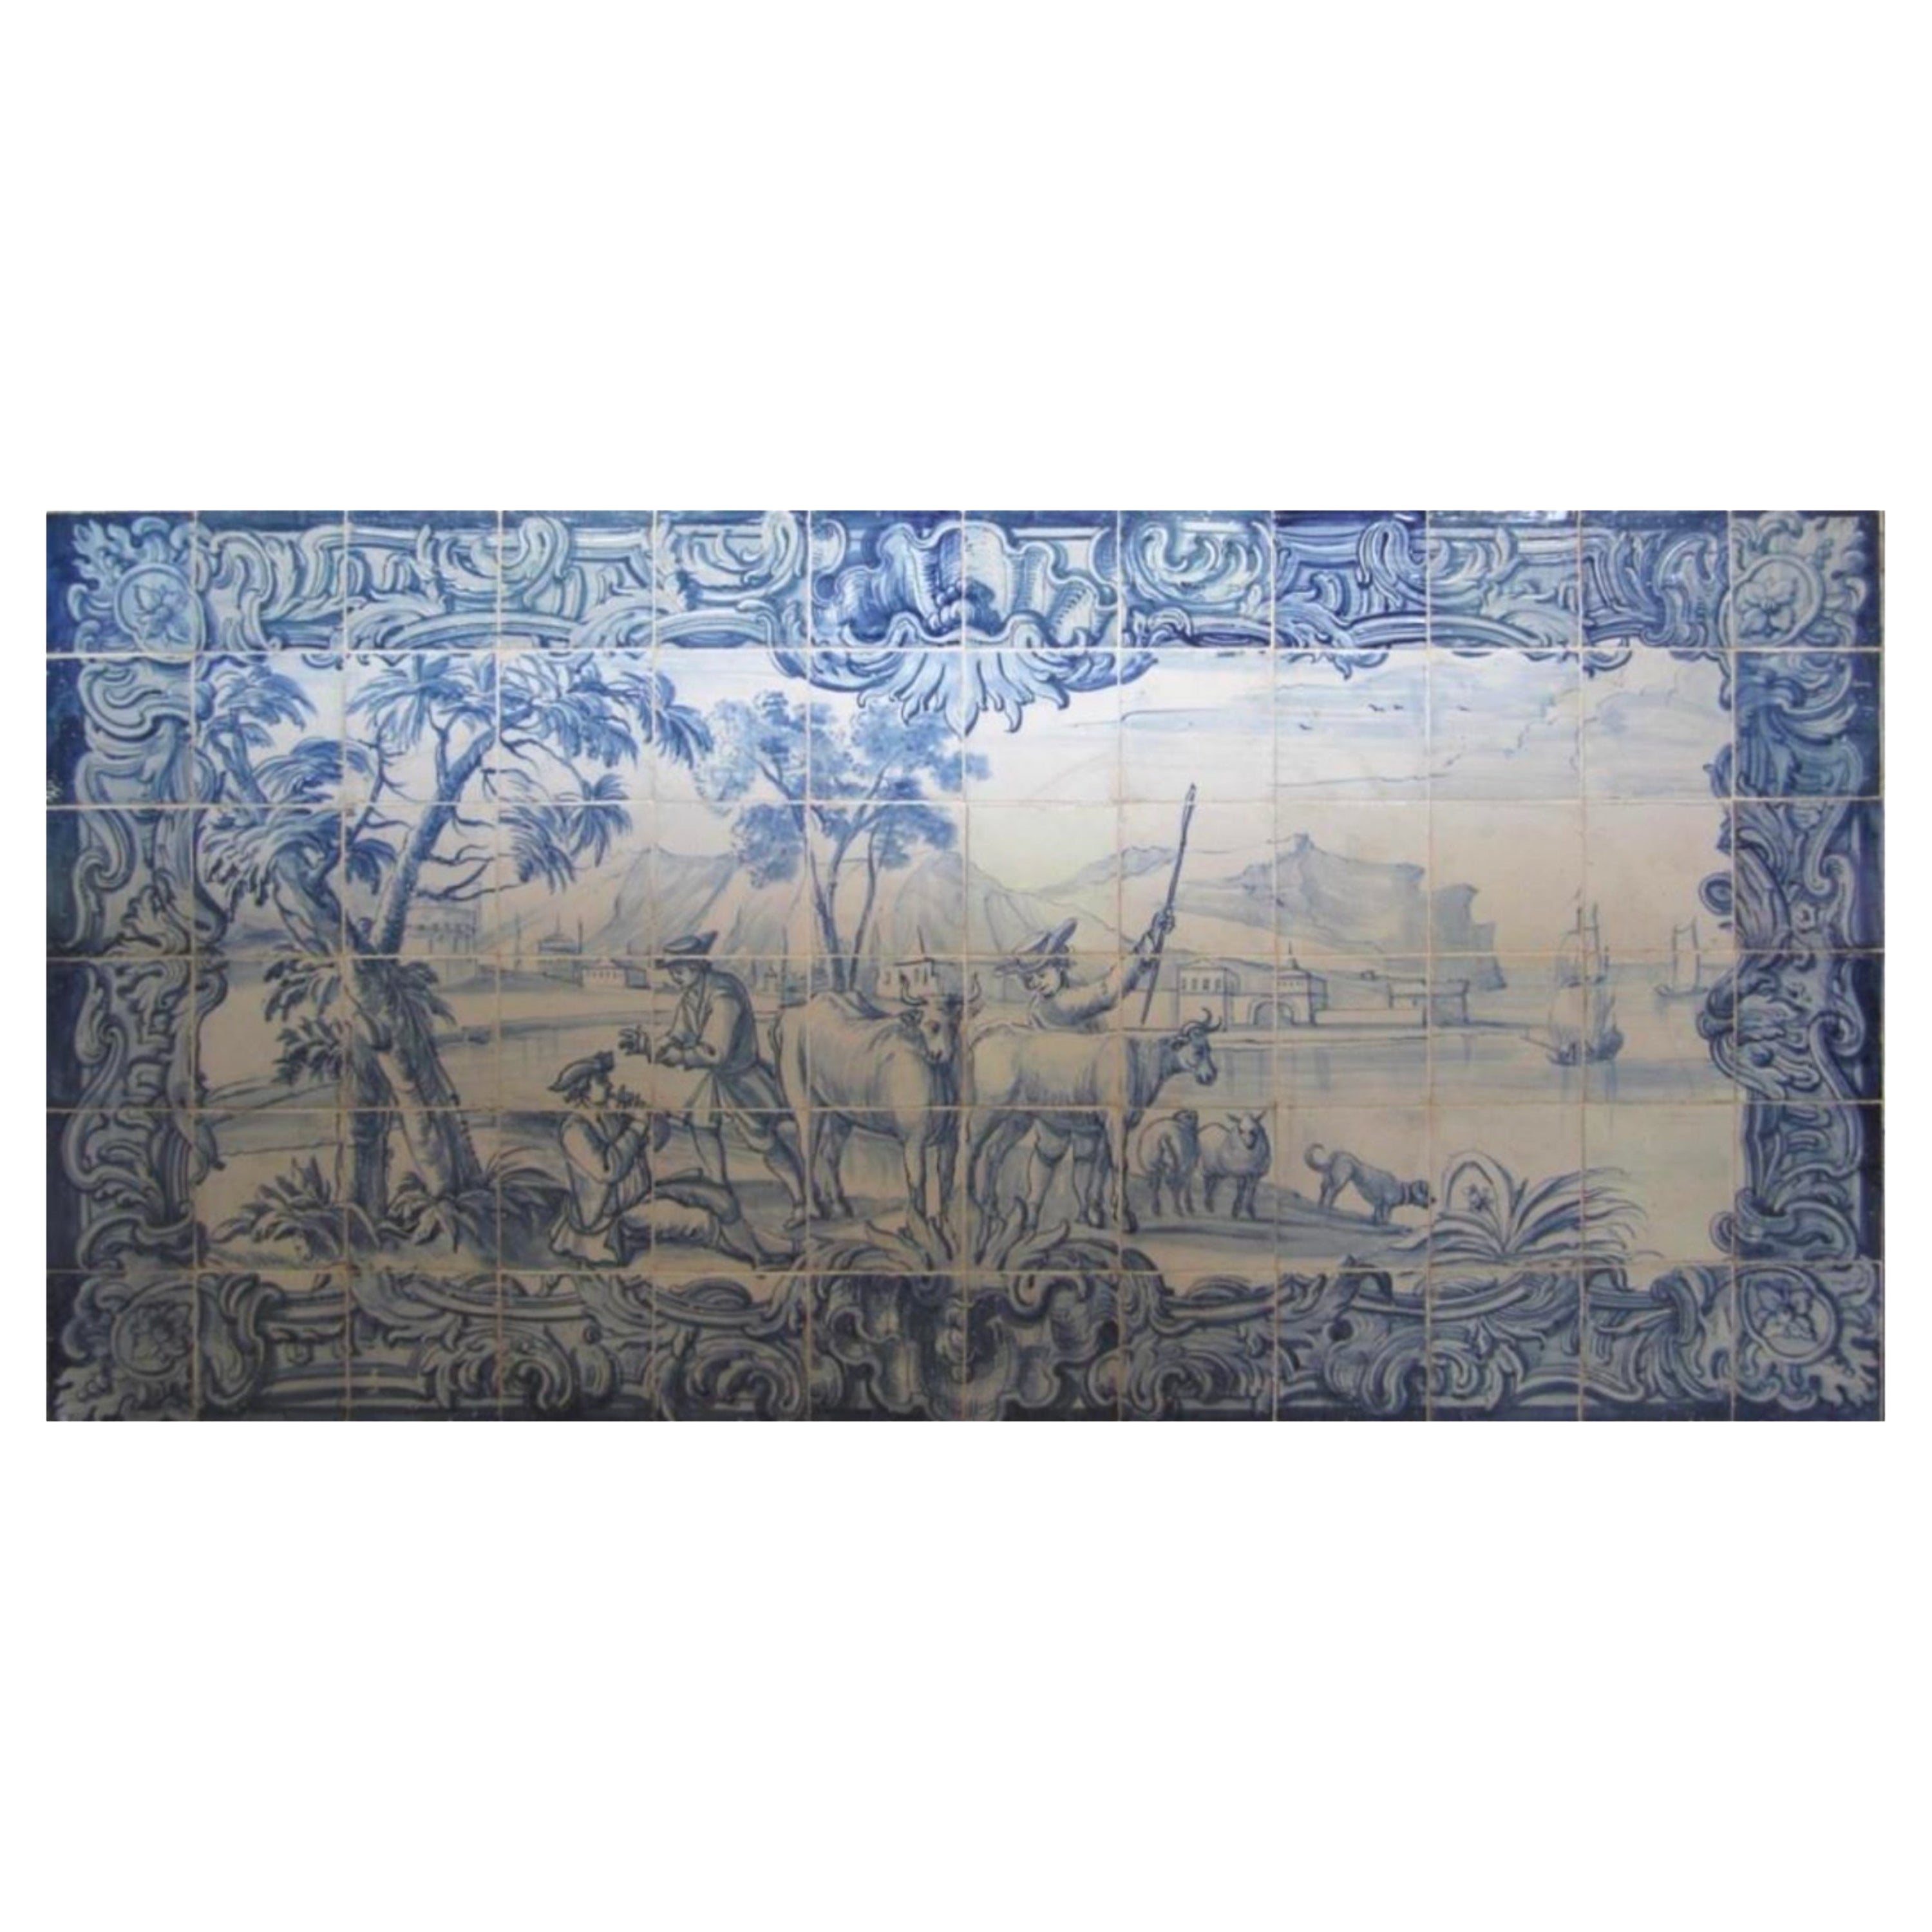 Panneau portugais « Azulejos » du 18ème siècle « Scène de cheminée »